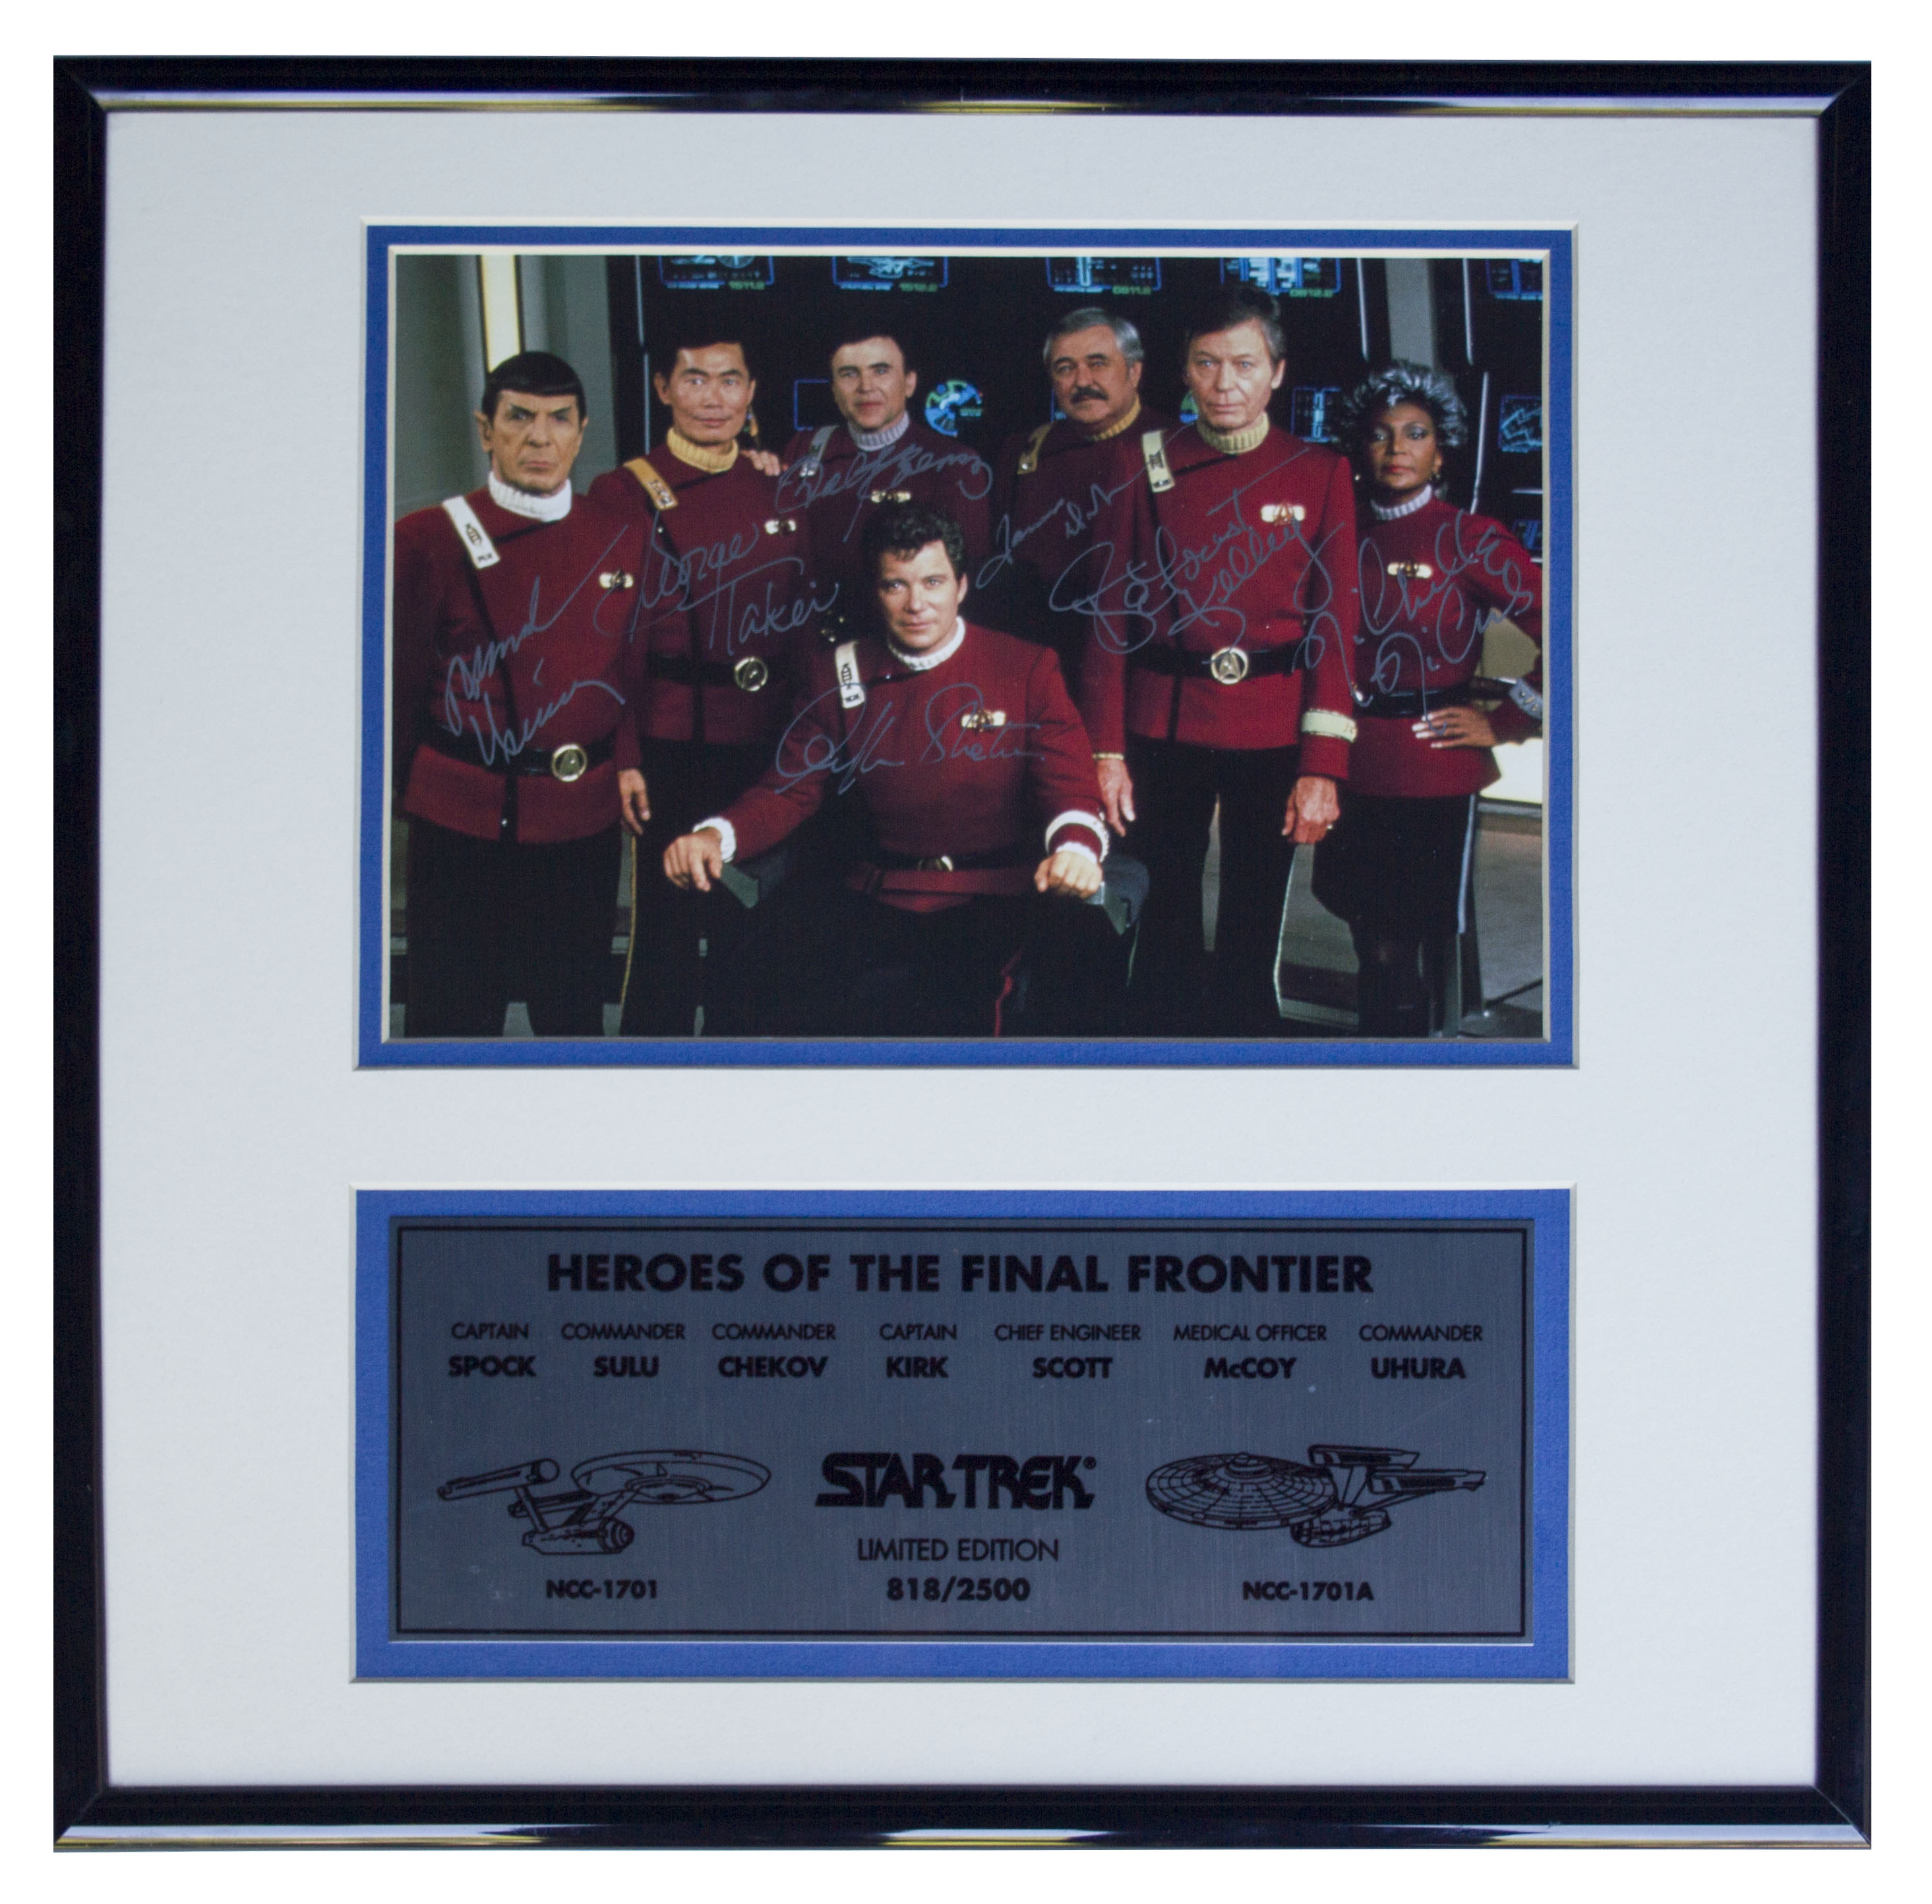 Star Trek Cast Signed Autographed 8x10 Photo Reprint 